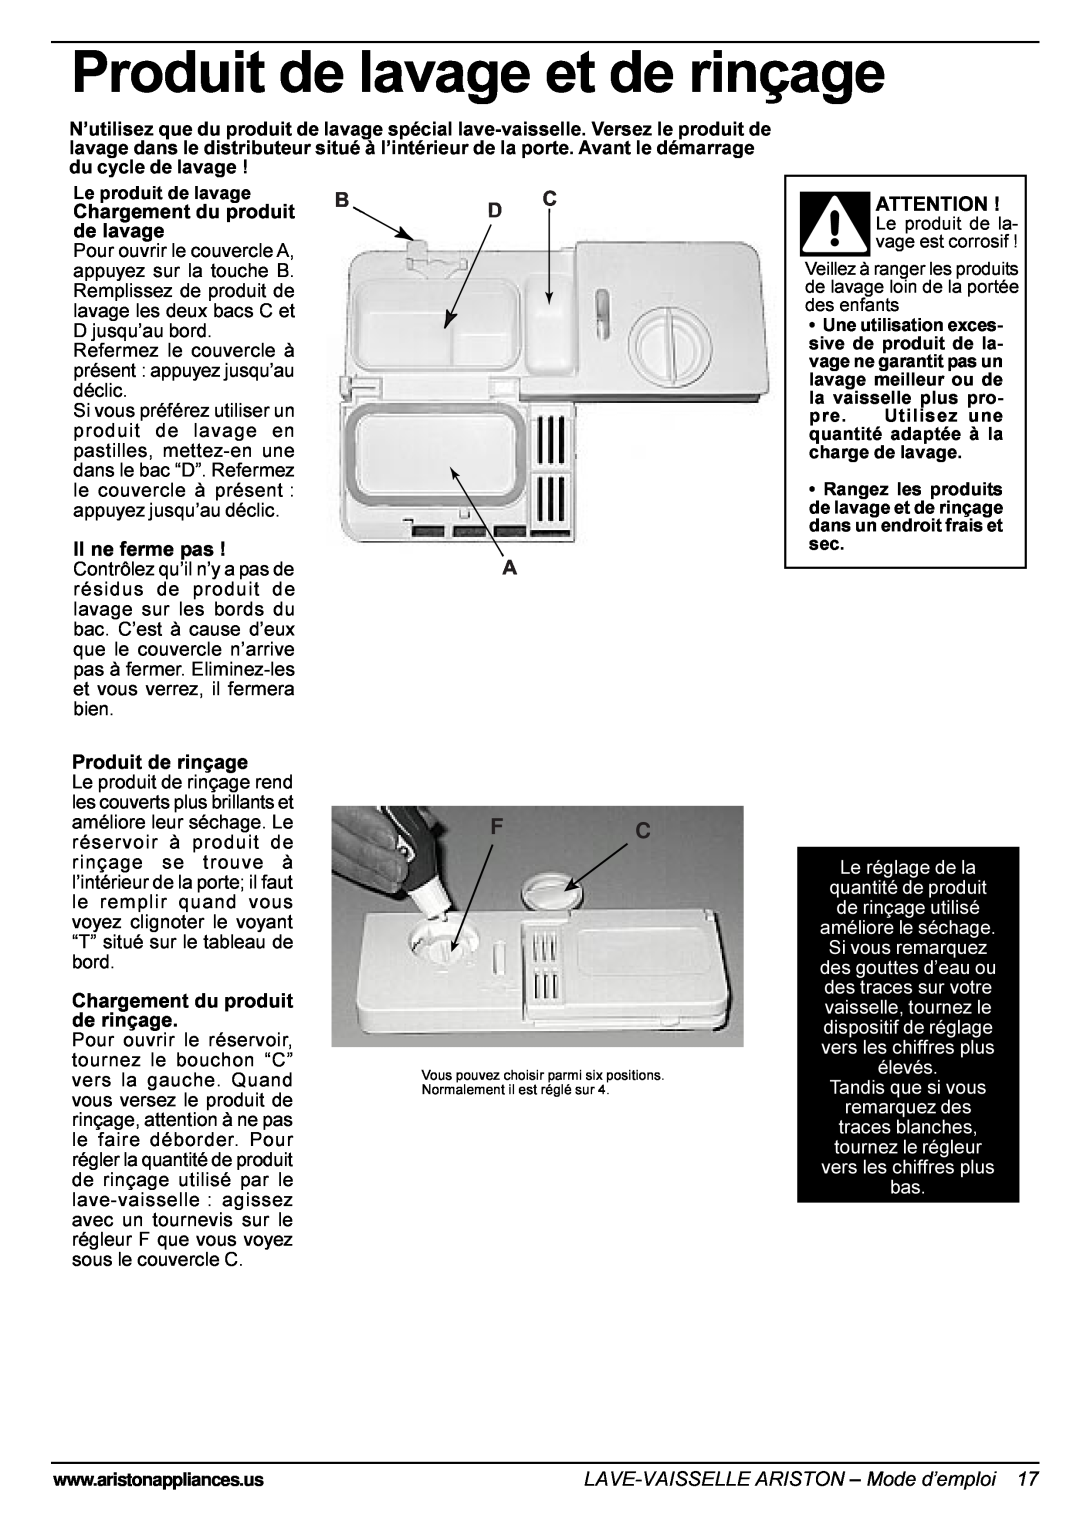 Ariston LI 670 B-S-W manual Produit de lavage et de rinçage, Chargement du produit, Il ne ferme pas, Produit de rinçage 